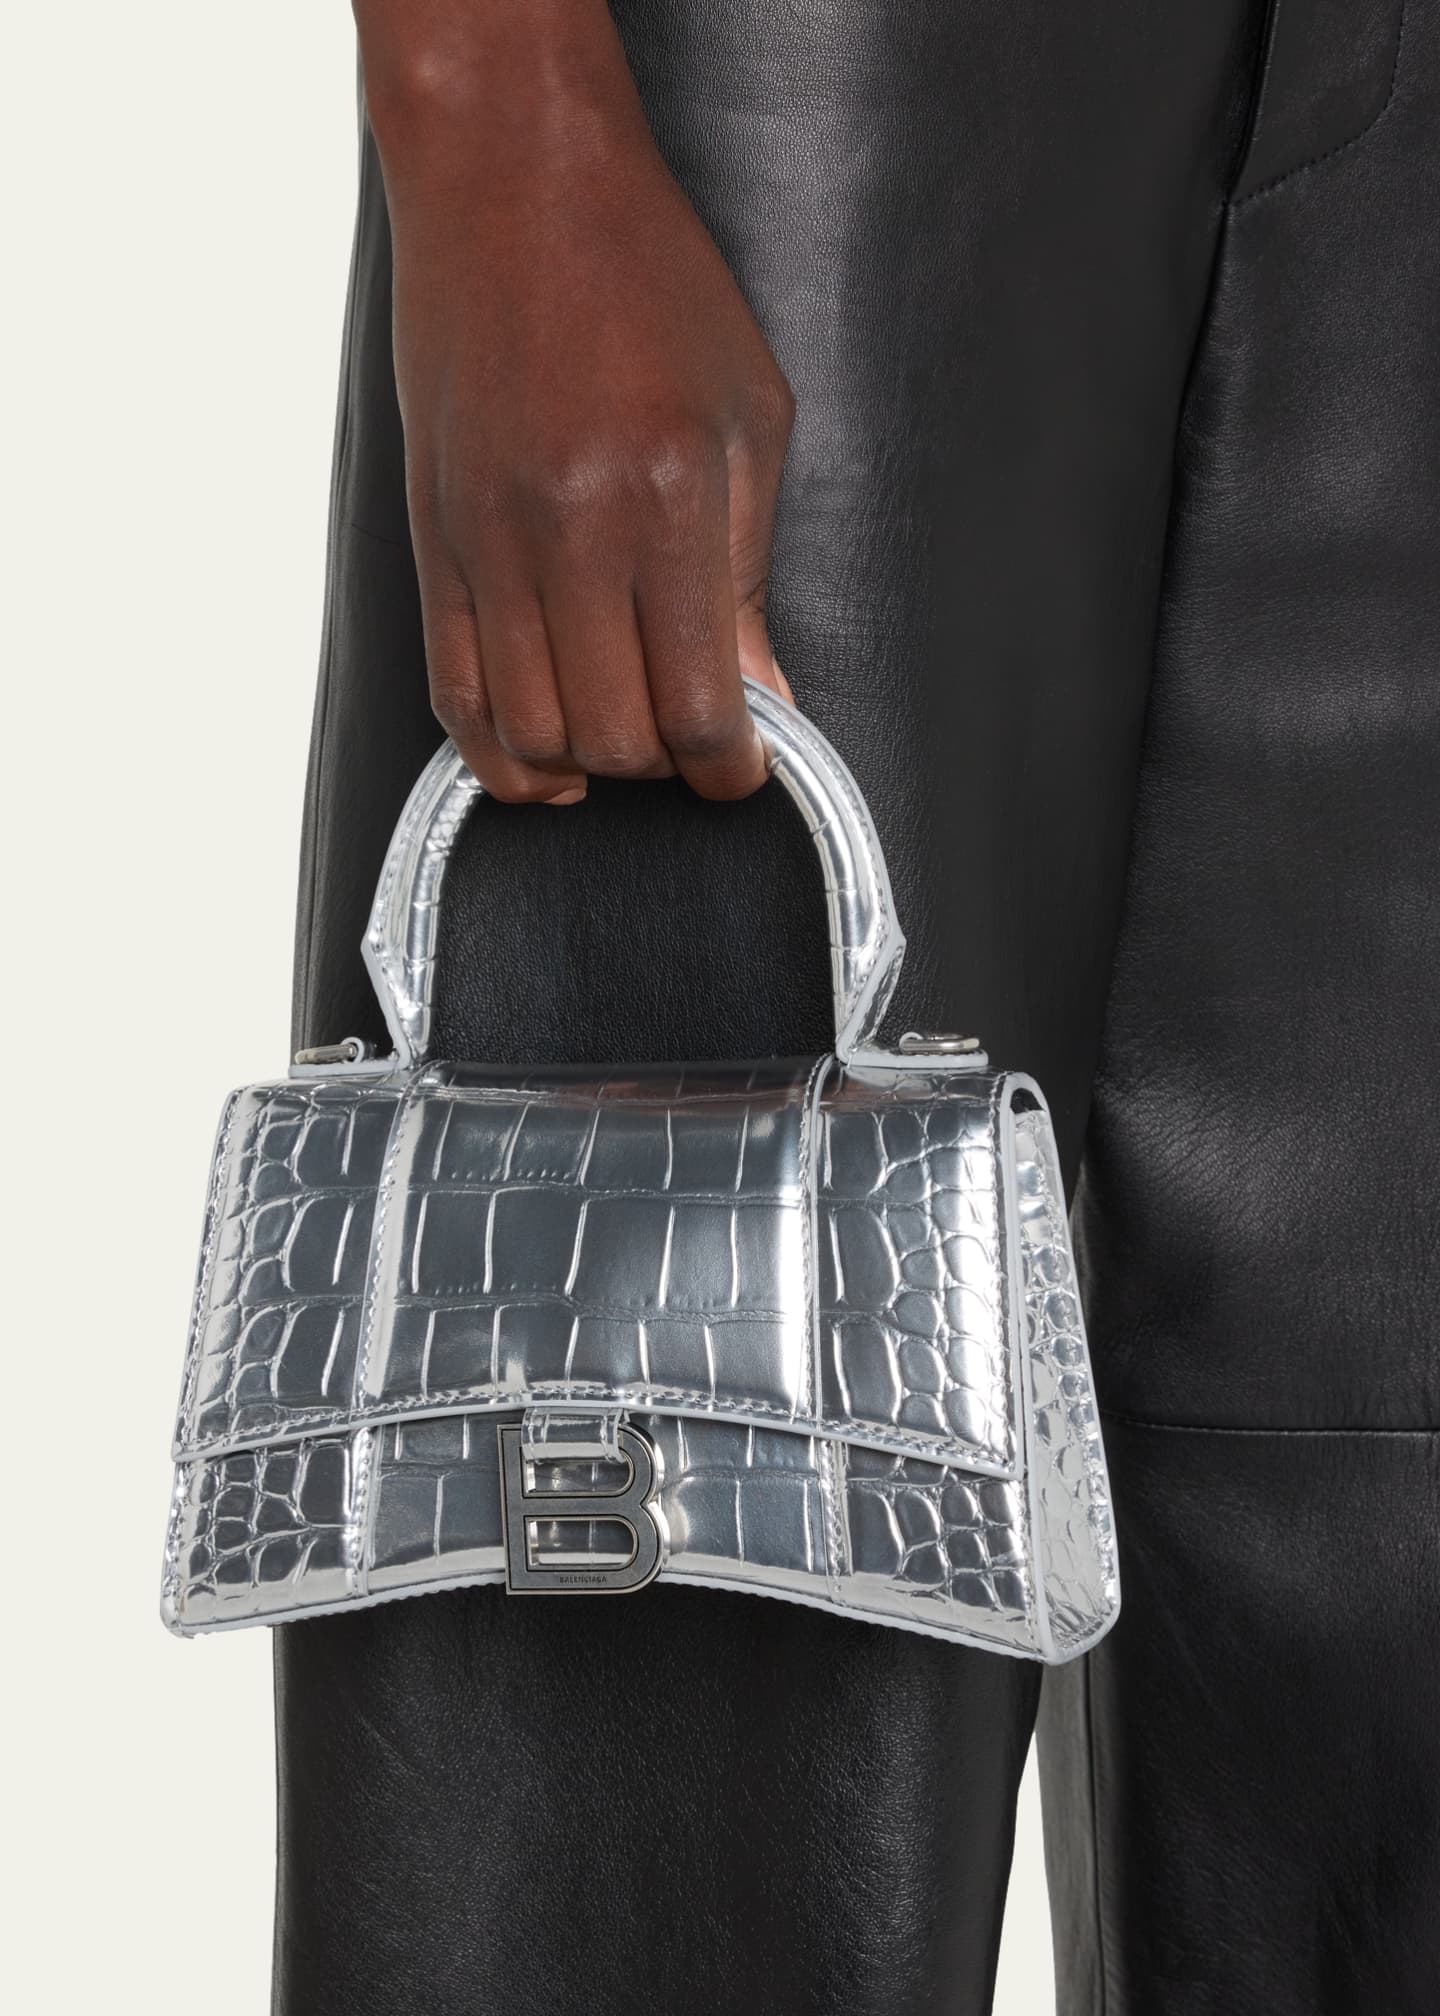 Balenciaga Hourglass Xs Top Handle Bag In Metallic Calfskin